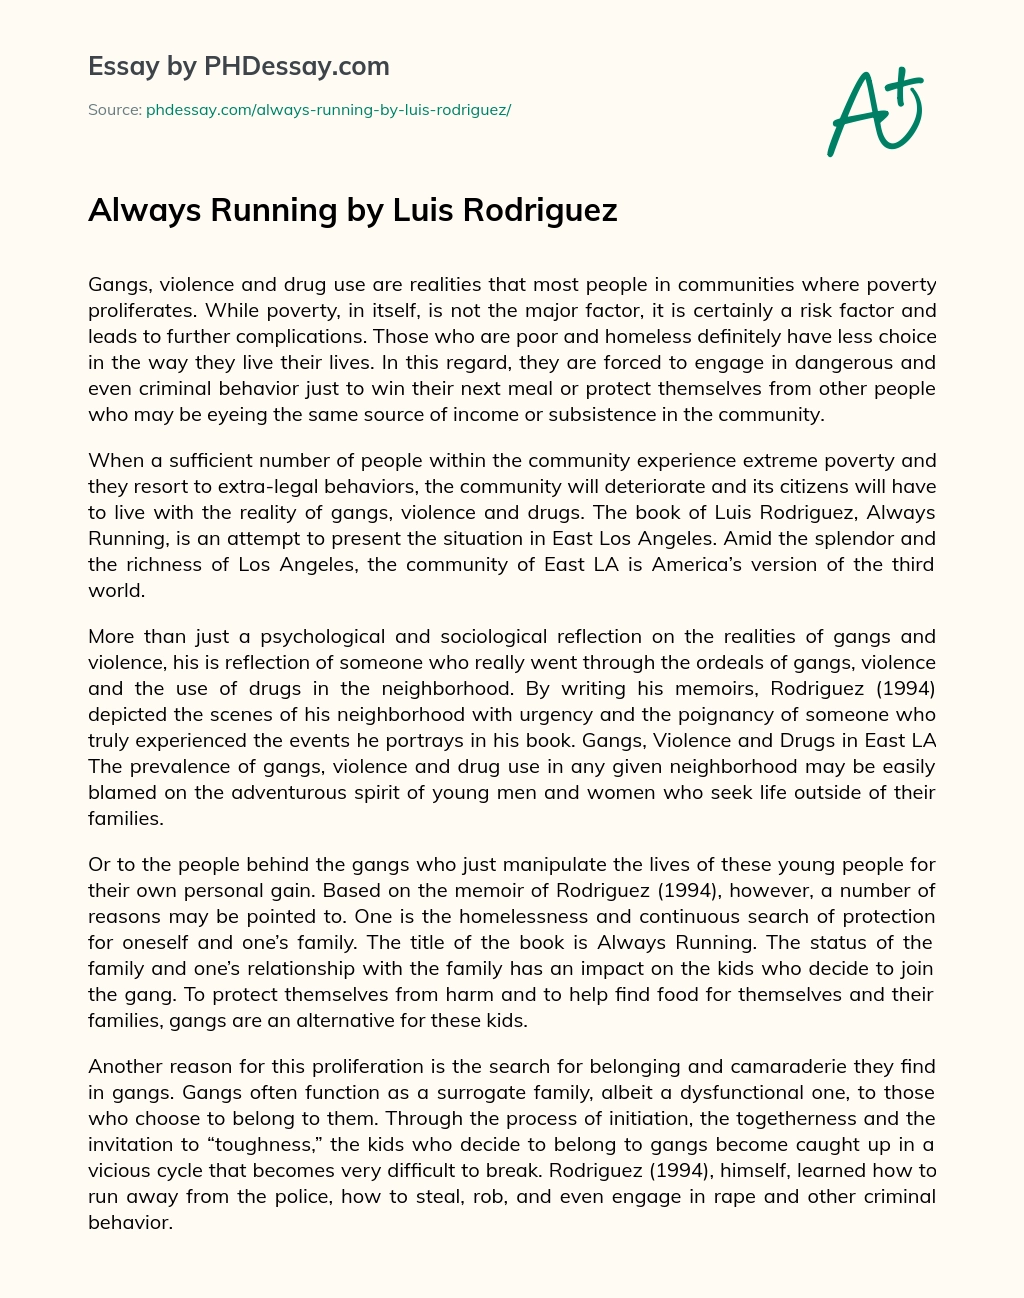 Always Running by Luis Rodriguez essay